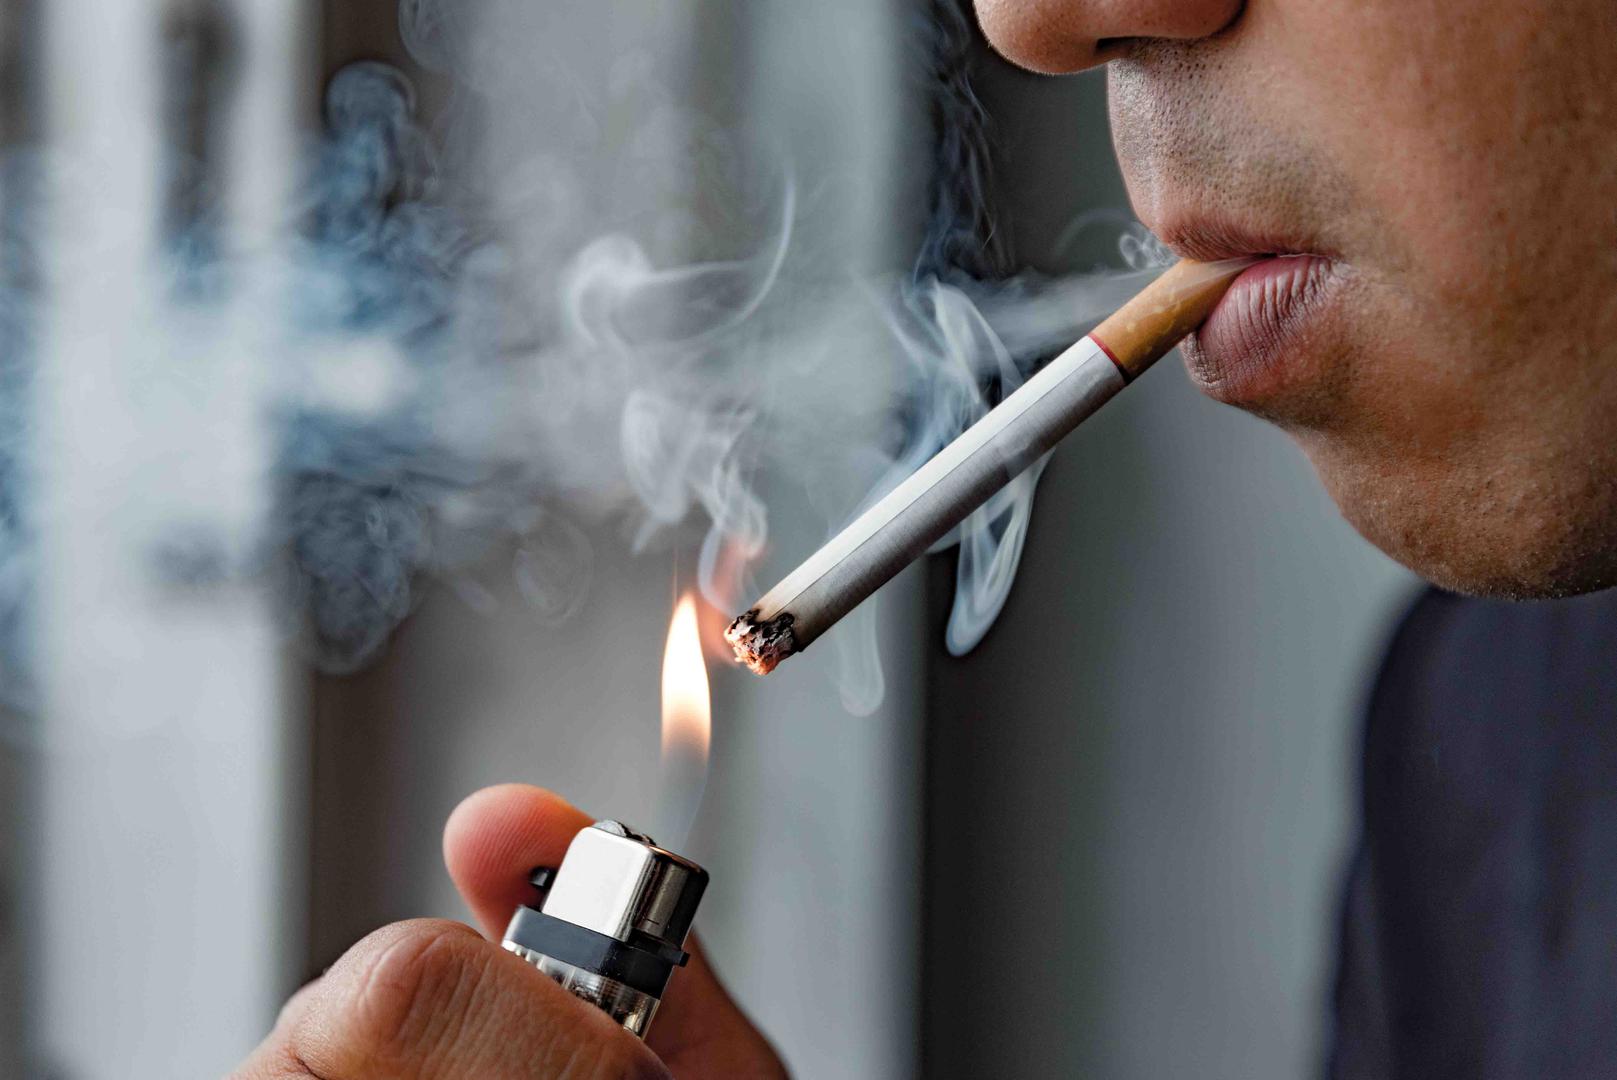 Pušenje: Ako ste pušač, vjerojatno ta navika pridonosi blažoj erekciji. 'Muškarci koji puše imaju dvostruko veću vjerojatnost da će patiti od erektilne disfunkcije od muškaraca koji ne puše', kaže dr. Foster, ‘Pušenje otežava cirkulaciju u svim dijelovima tijela uključujući genitalije’.